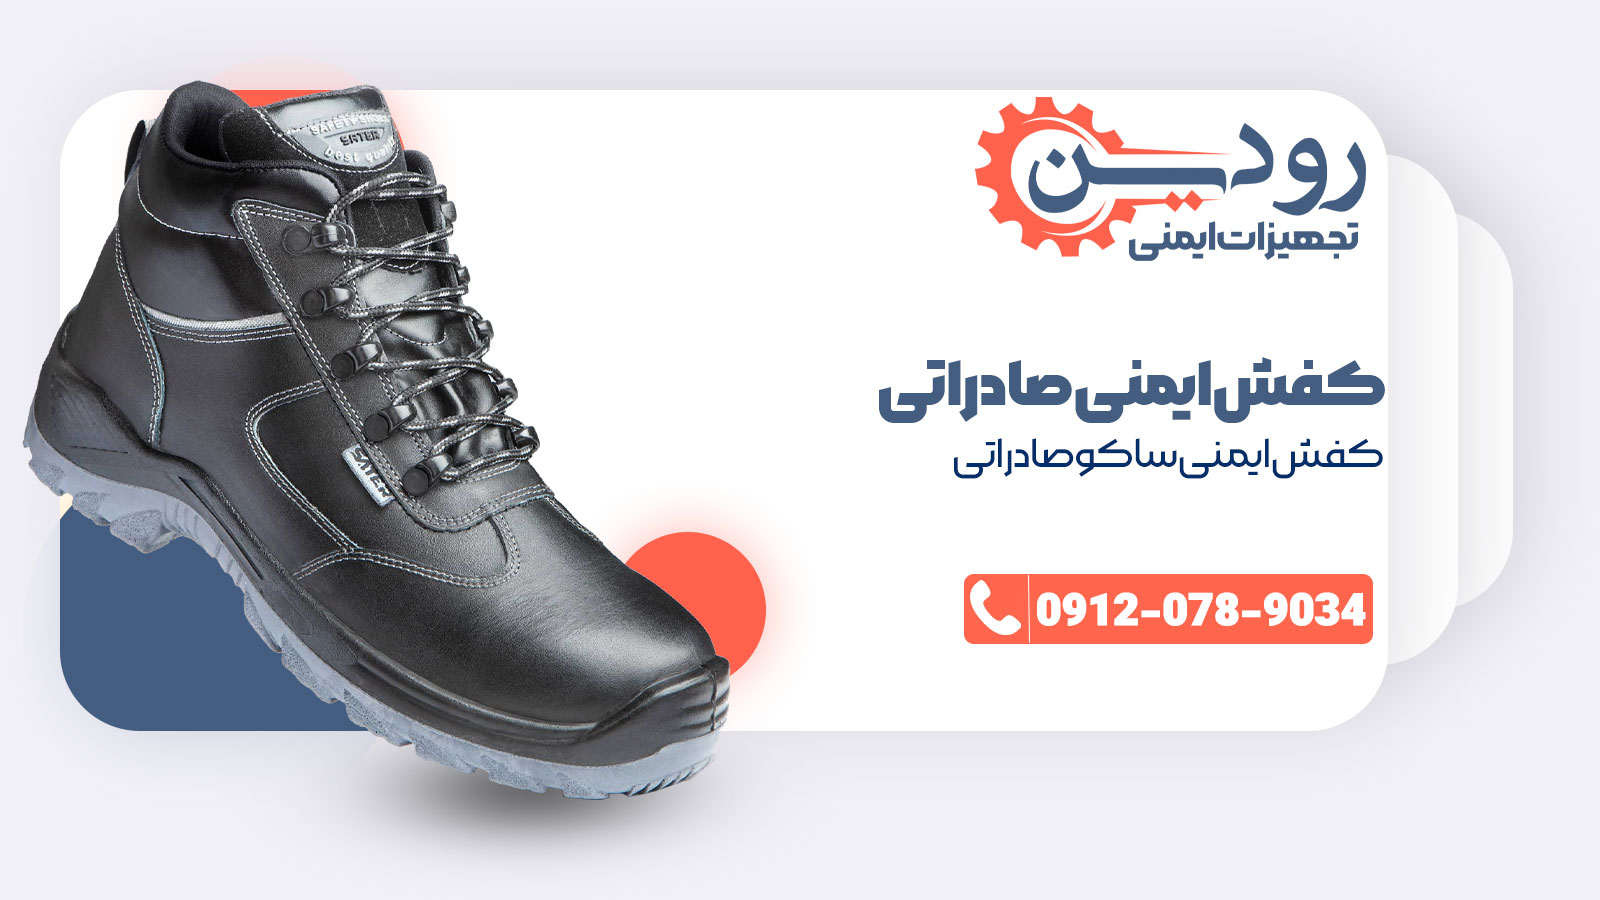 مرکز فروش کفش ایمنی صادراتی ساتر به منظور رشد صادرات، مدل ساکو صادراتی را تولید کرده است.